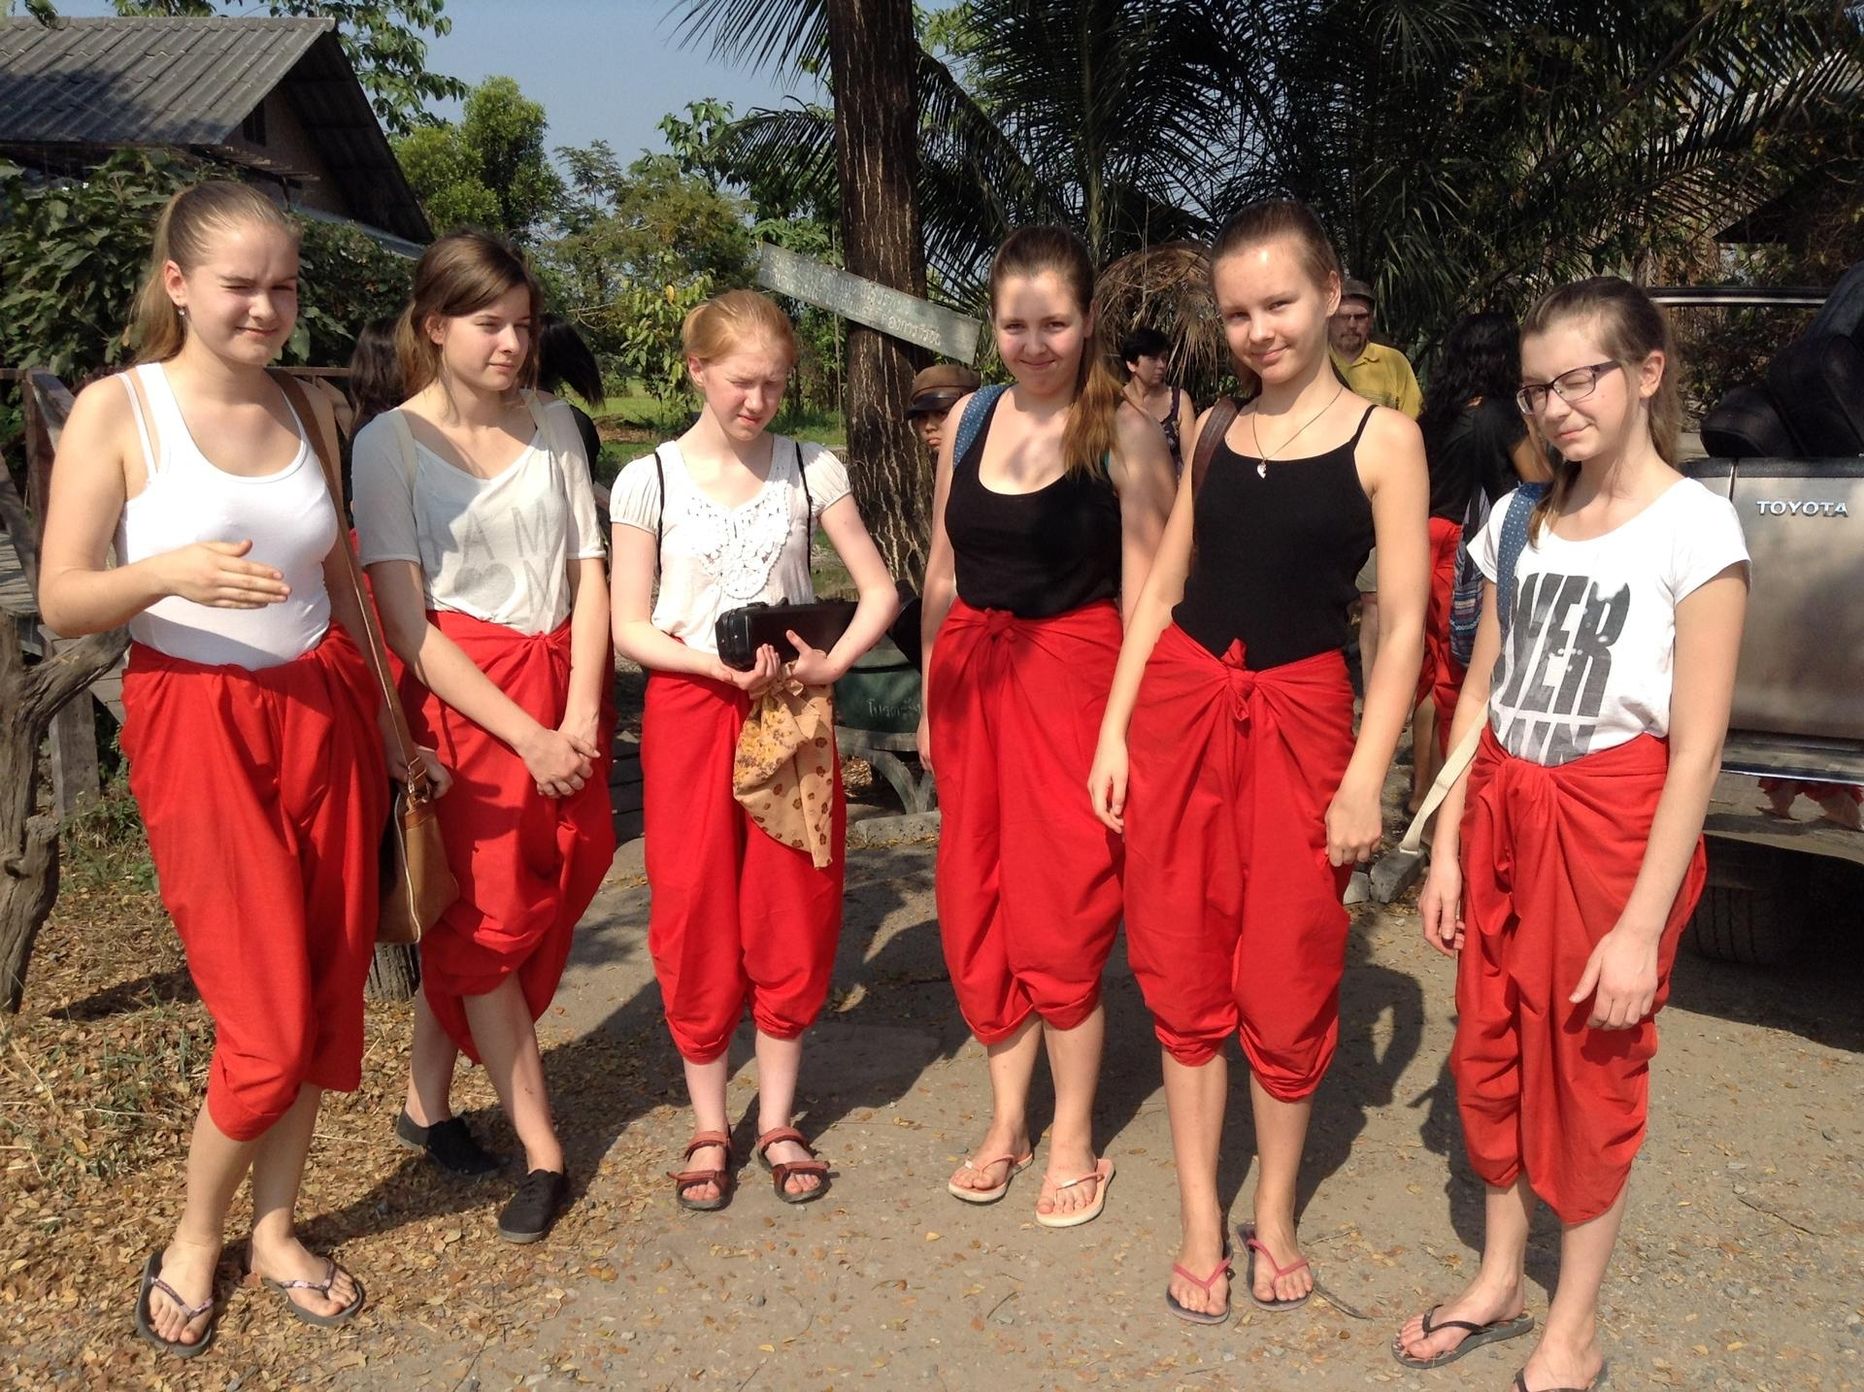 Eelmisel korral käisid Eve Stuudio noored Tais kolm aastat tagasi ning said osa sealses filmis. Punased püksid on sealne traditsiooniline koolivorm.